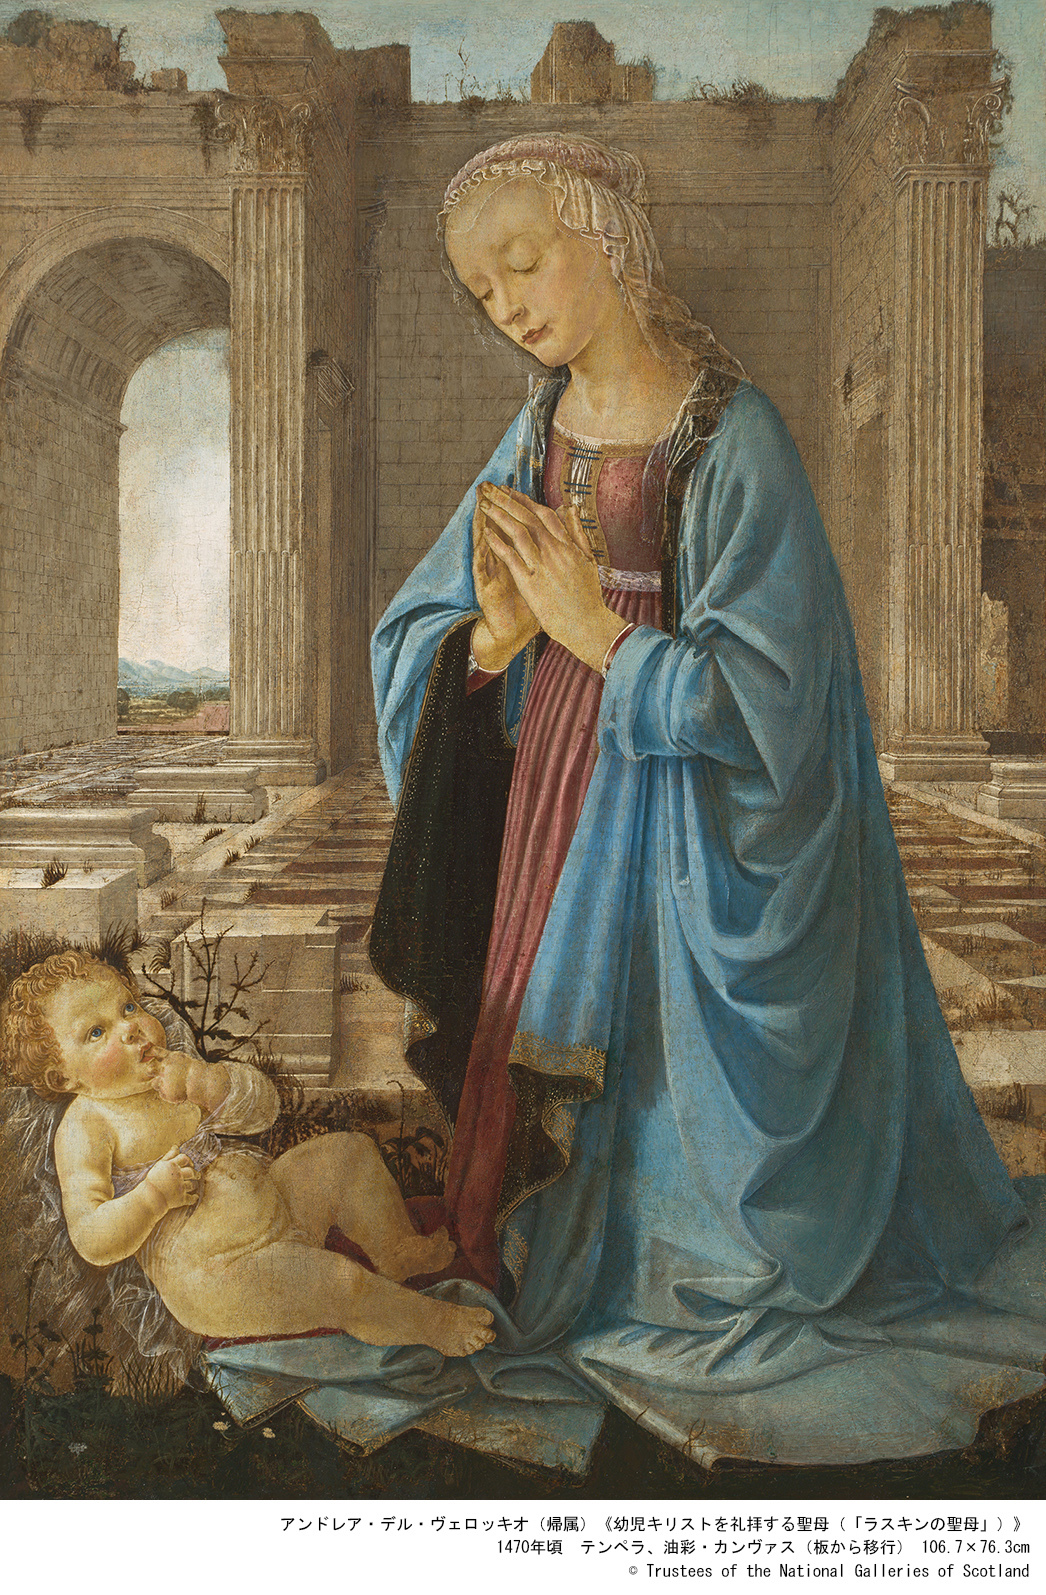 アンドレア・デル・ヴェロッキオ（帰属）「幼児キリストを礼拝する聖母（「ラスキンの聖母」）」